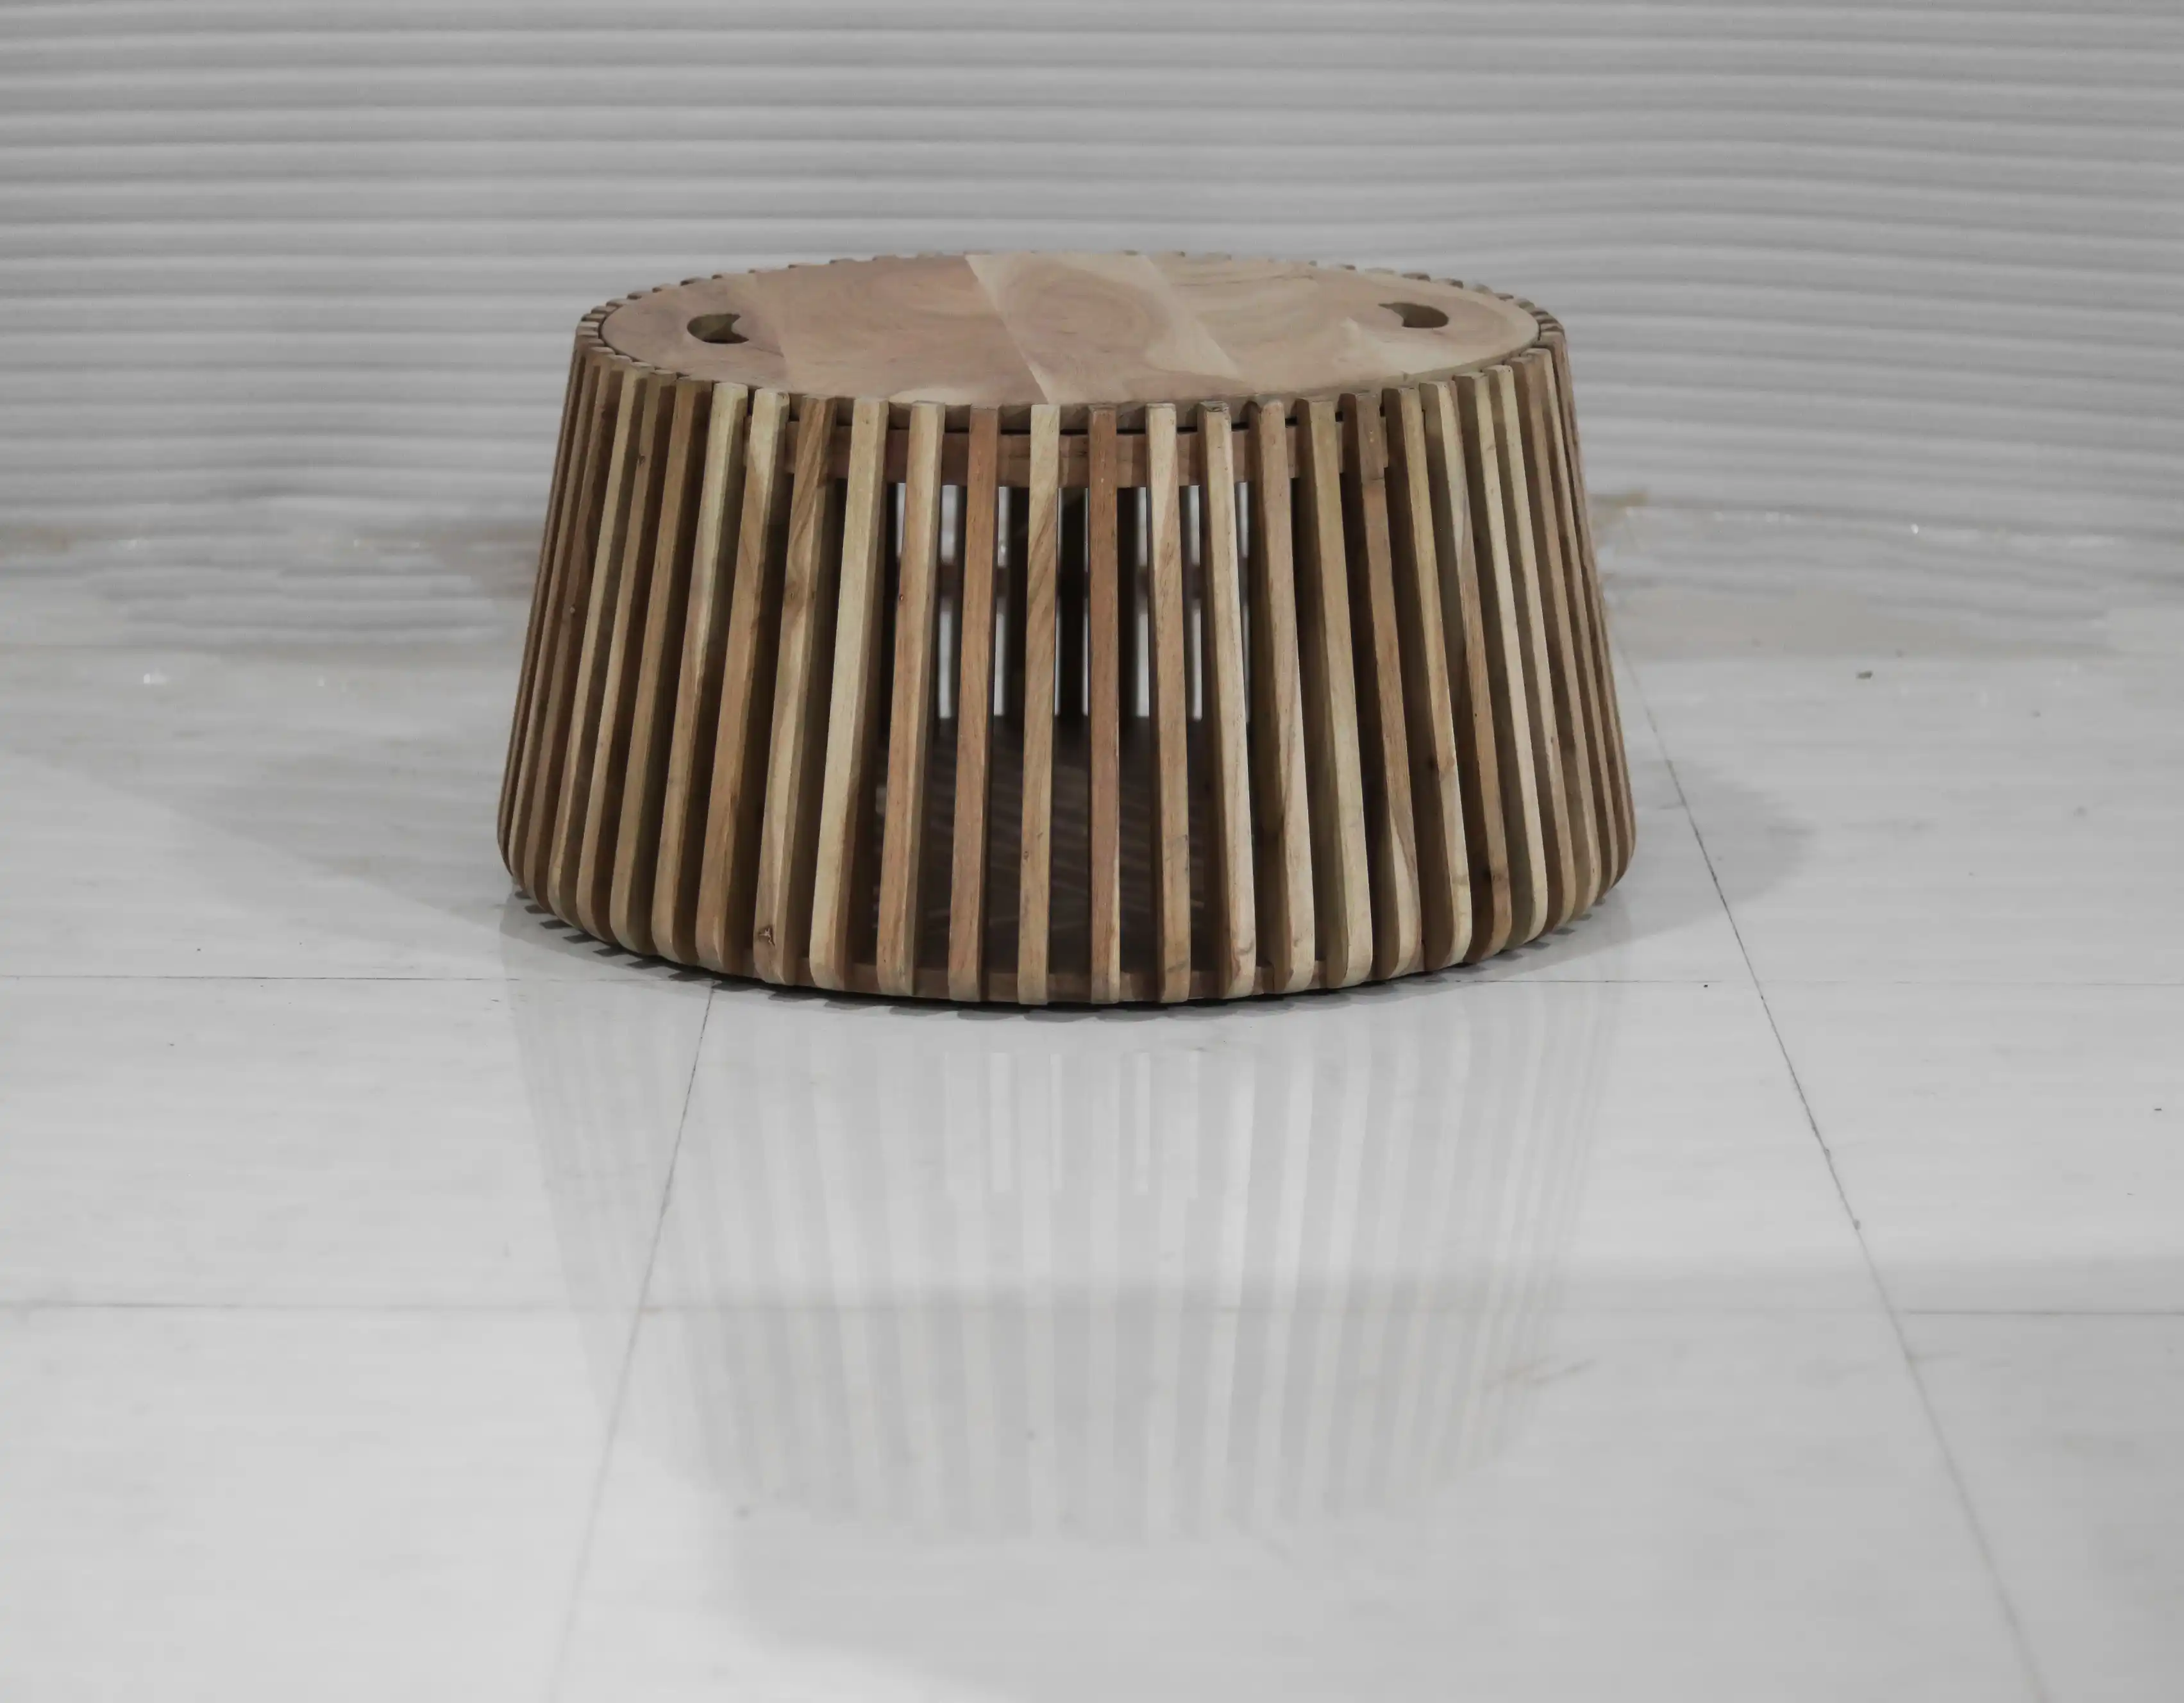 Wooden Nest Round Coffee Table with Storage - popular handicrafts